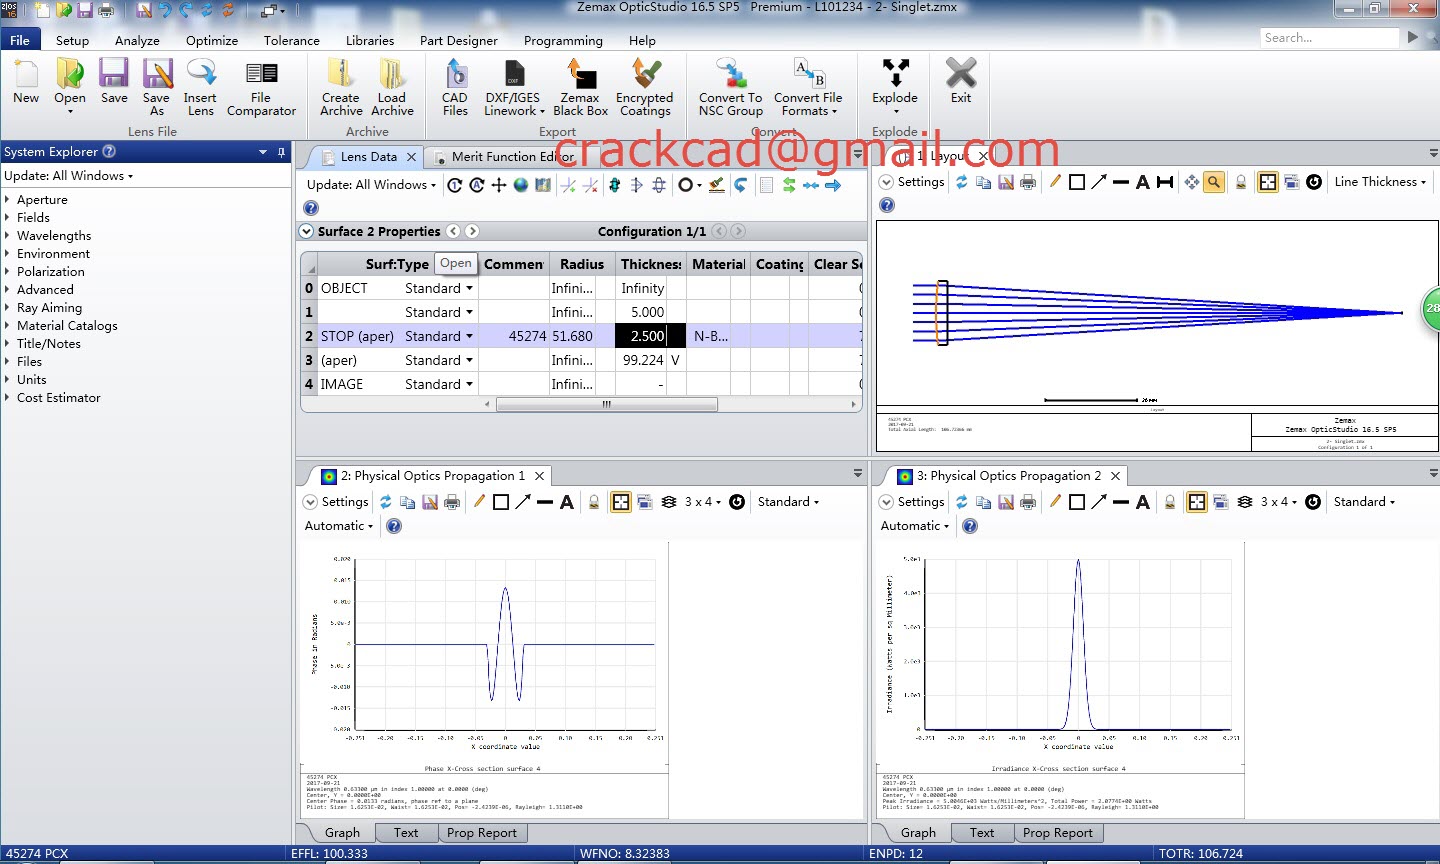 zemax opticstudio crack free download